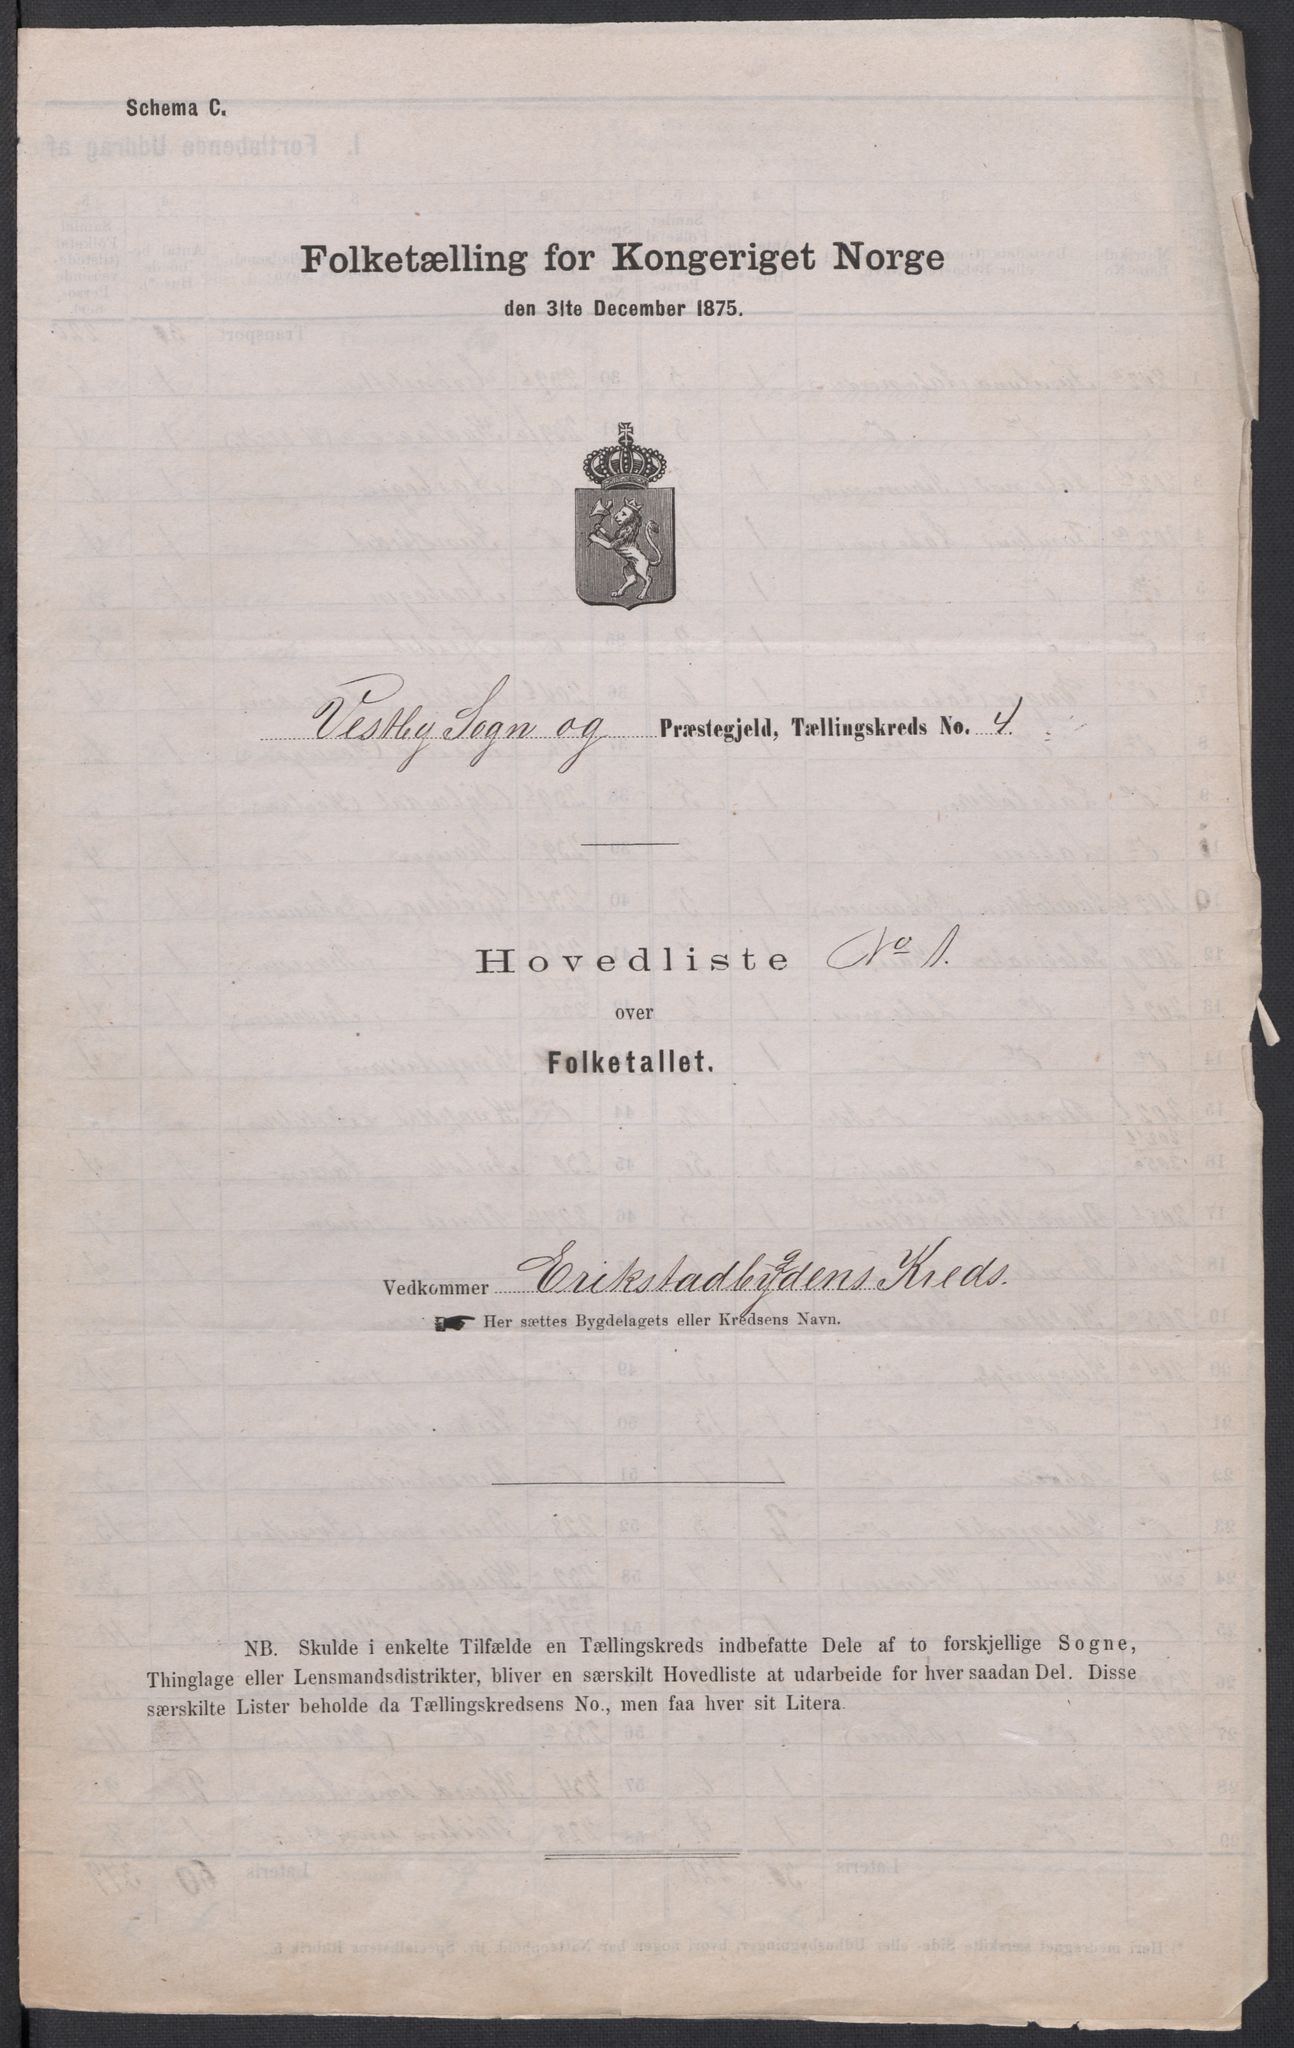 RA, Folketelling 1875 for 0211L Vestby prestegjeld, Vestby sokn, Garder sokn og Såner sokn, 1875, s. 10